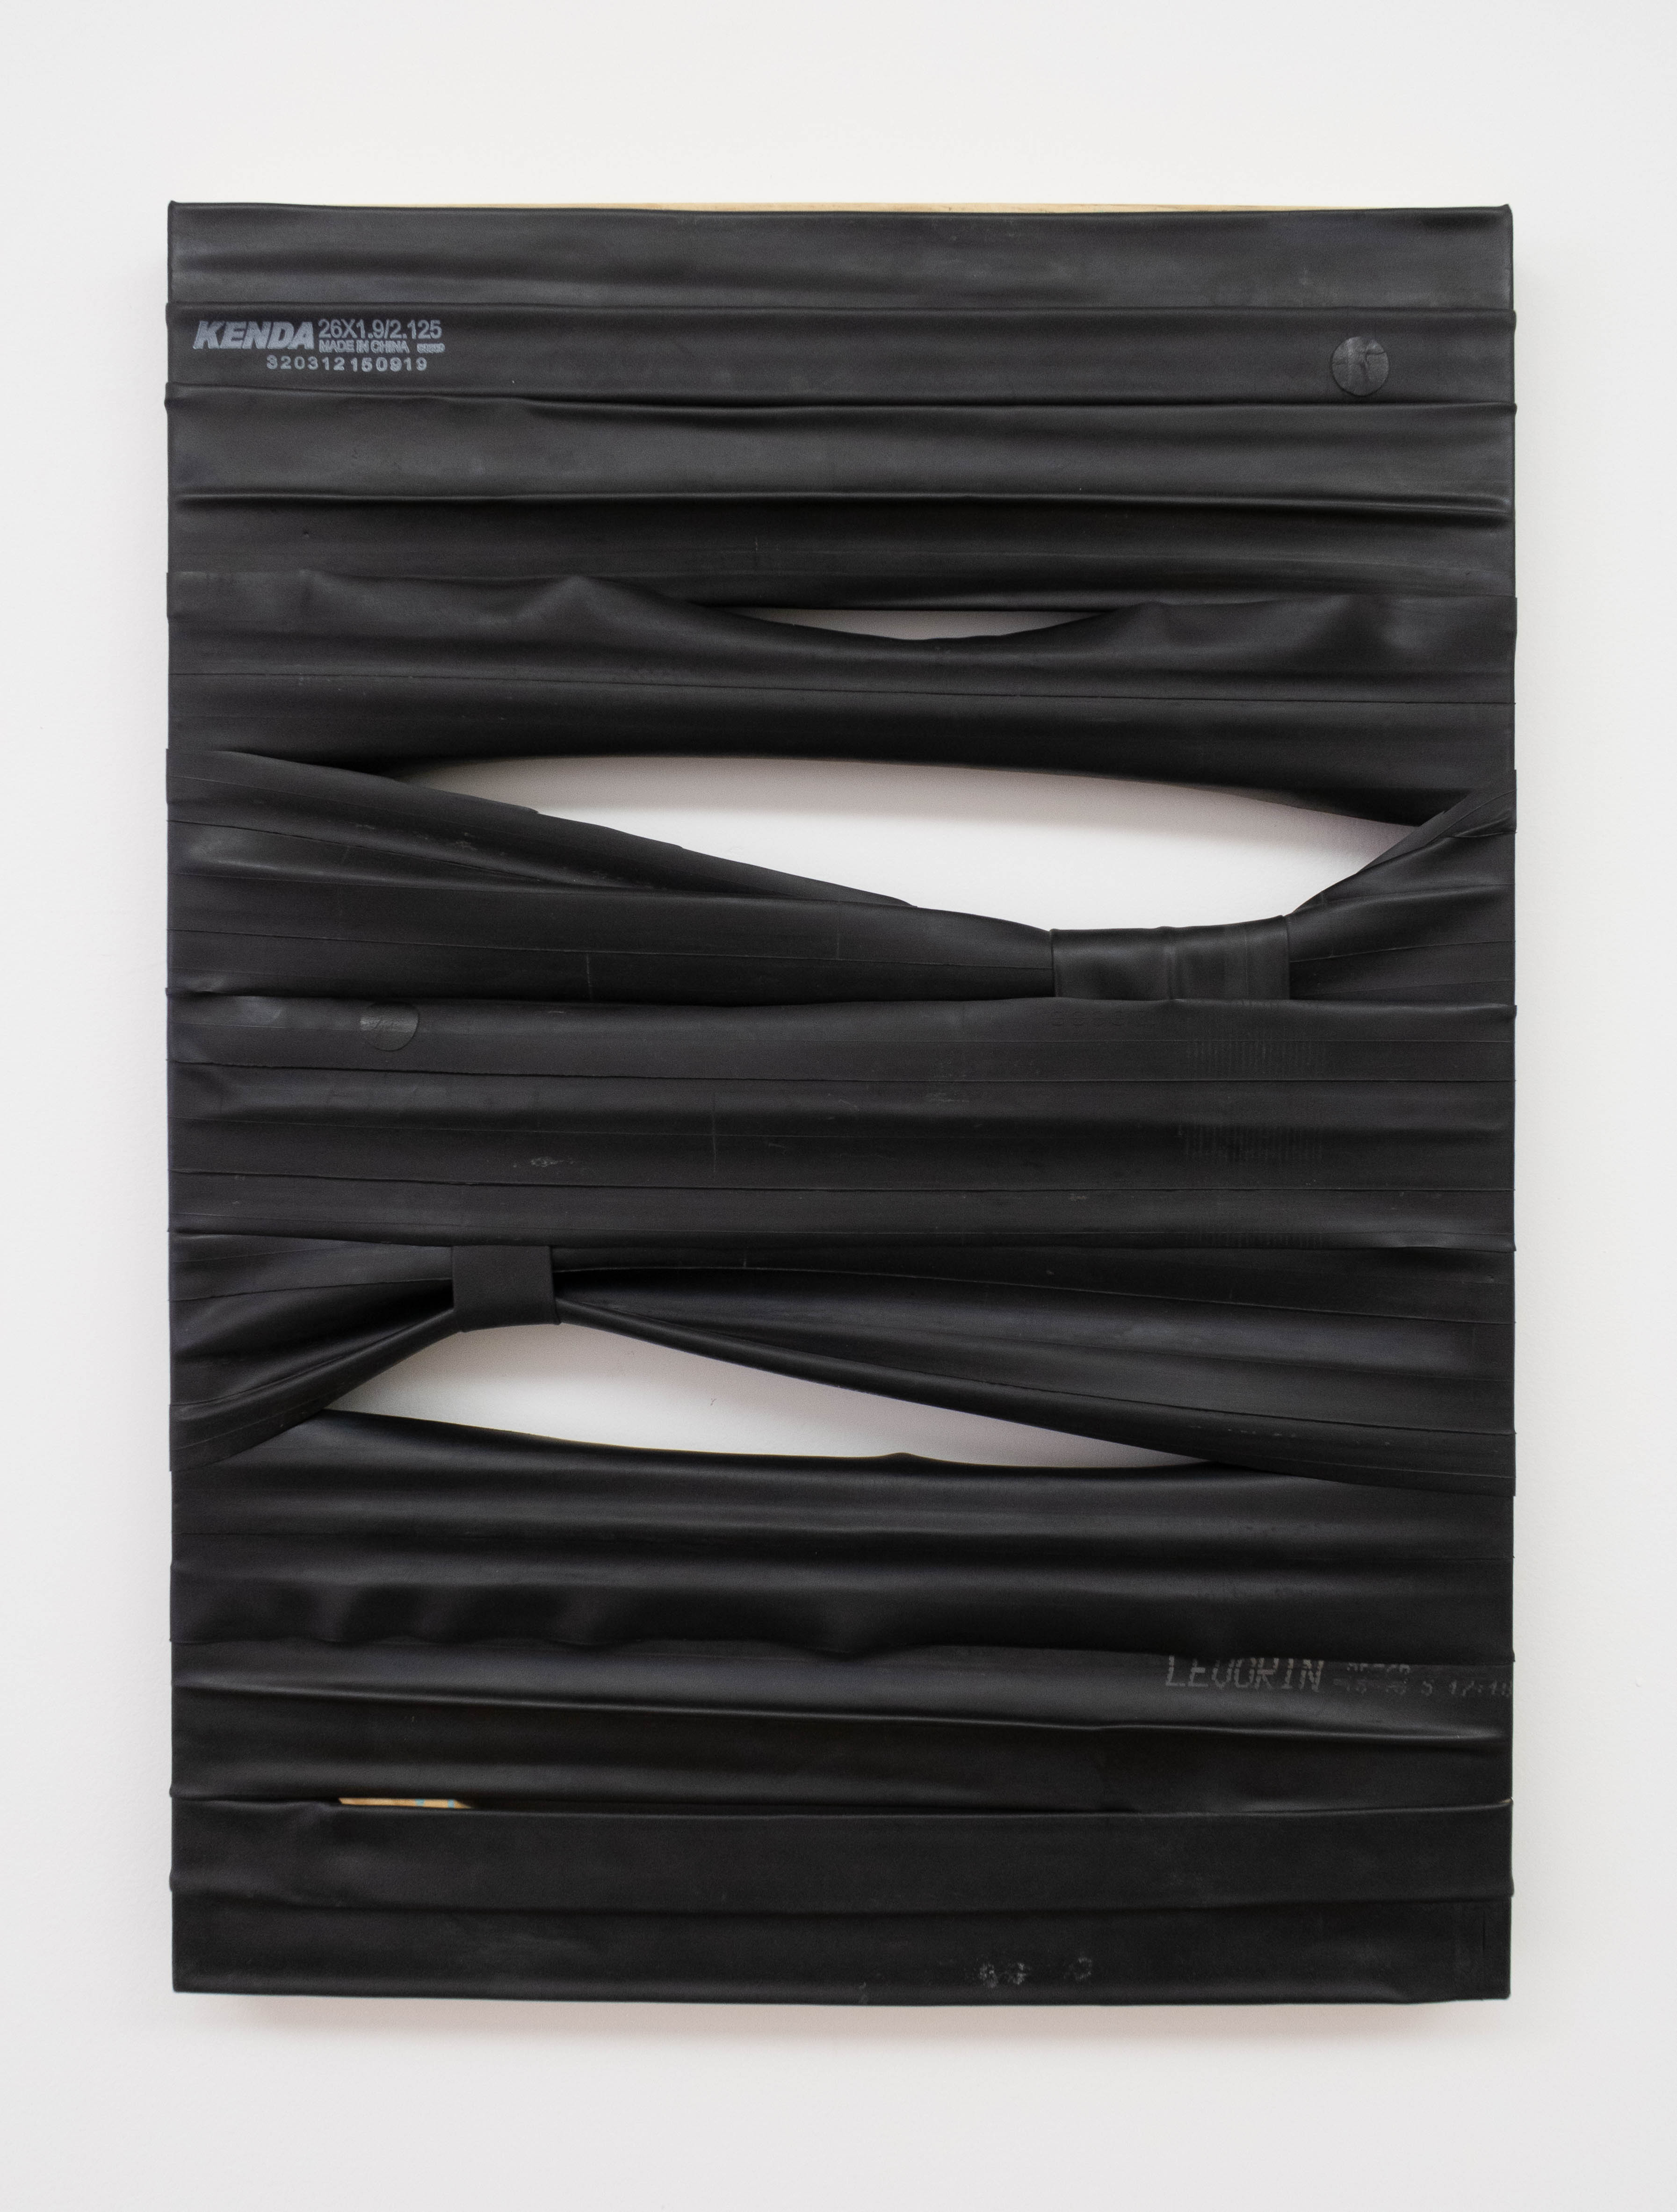 Fernando Soares, Série Força 18, Borracha sobre chassi de madeira, 80 x 60 cm, 2019